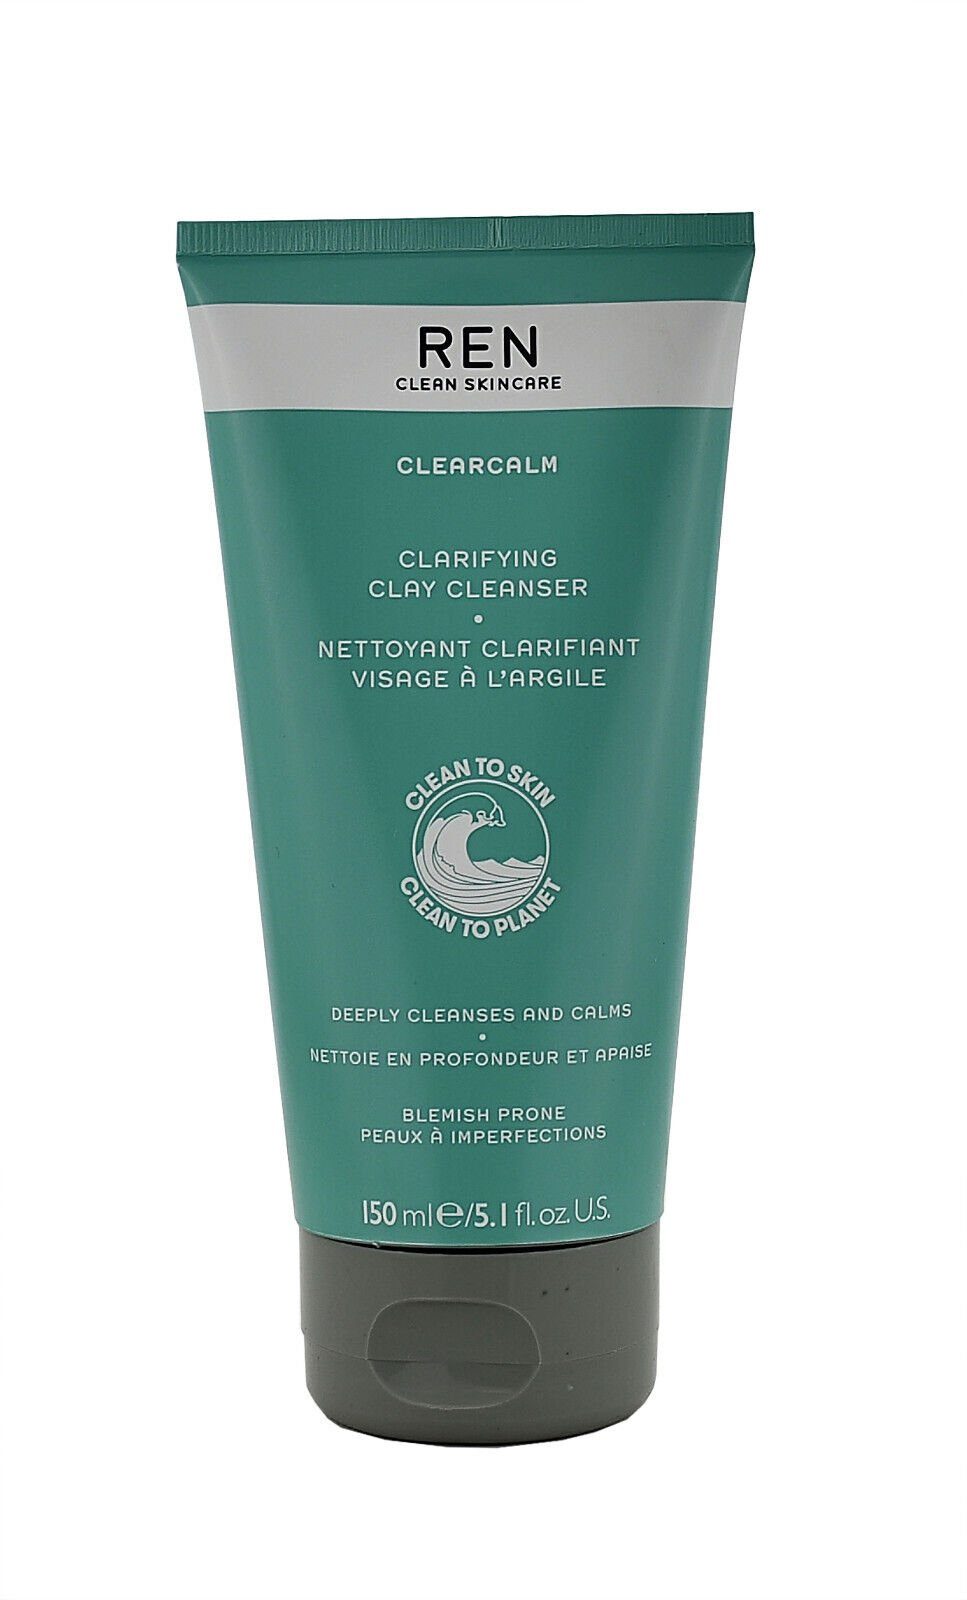 REN Clean Skincare Gesichts-Reinigungscreme REN Clarifying Clay Cleanser -  150ml | Reinigungscremes